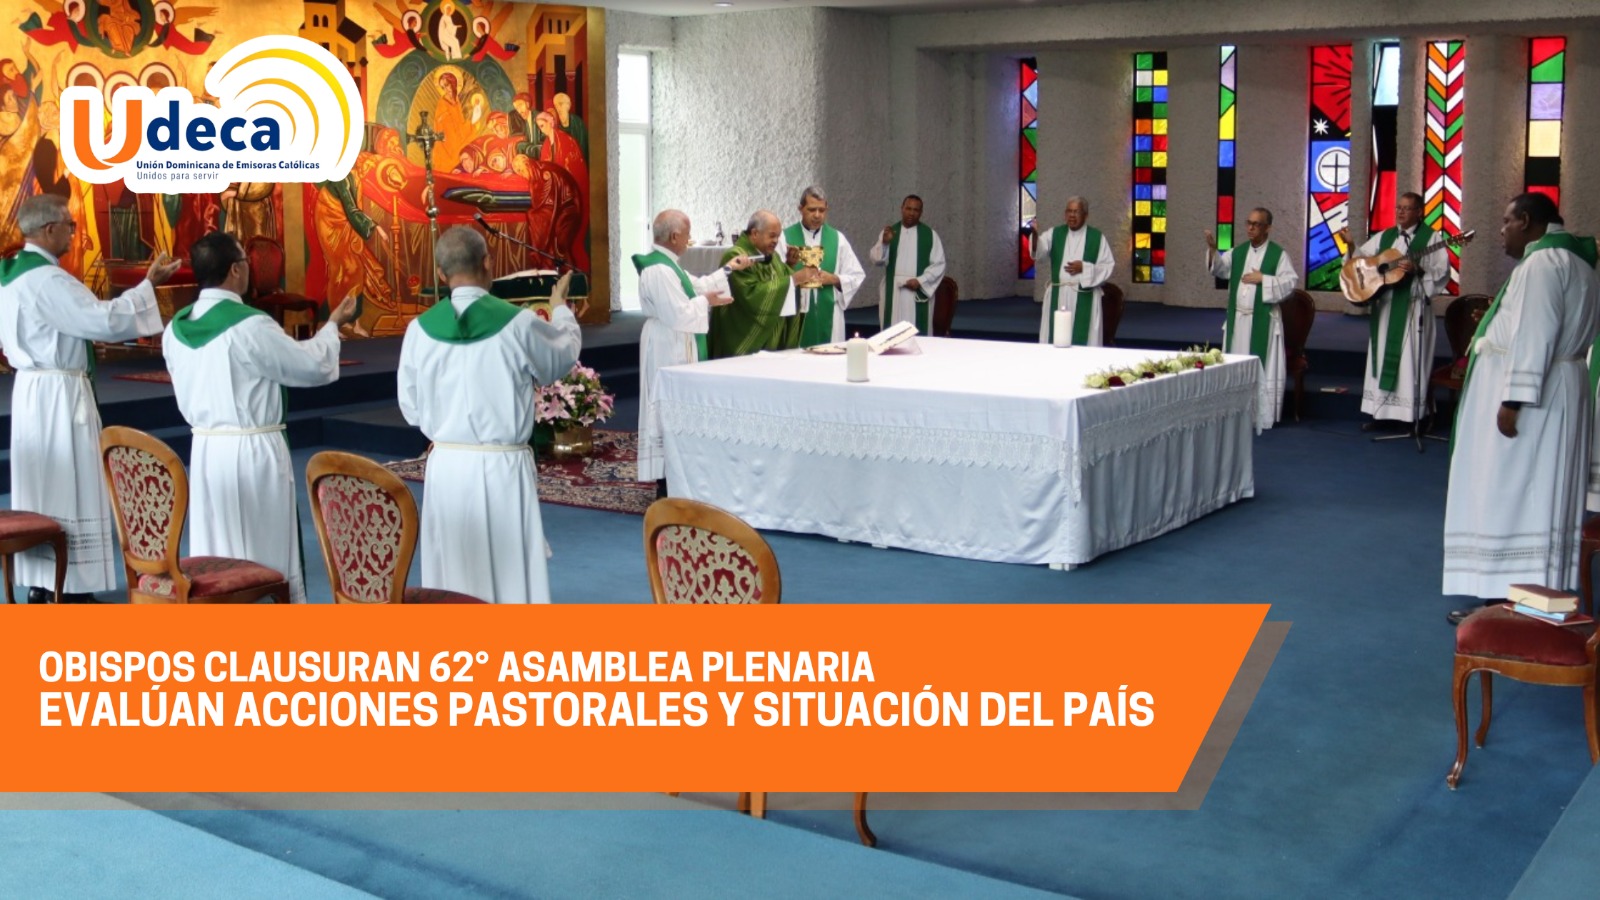 Obispos clausuran 62° Asamblea Plenaria "Evalúan acciones pastorales y situación del país"